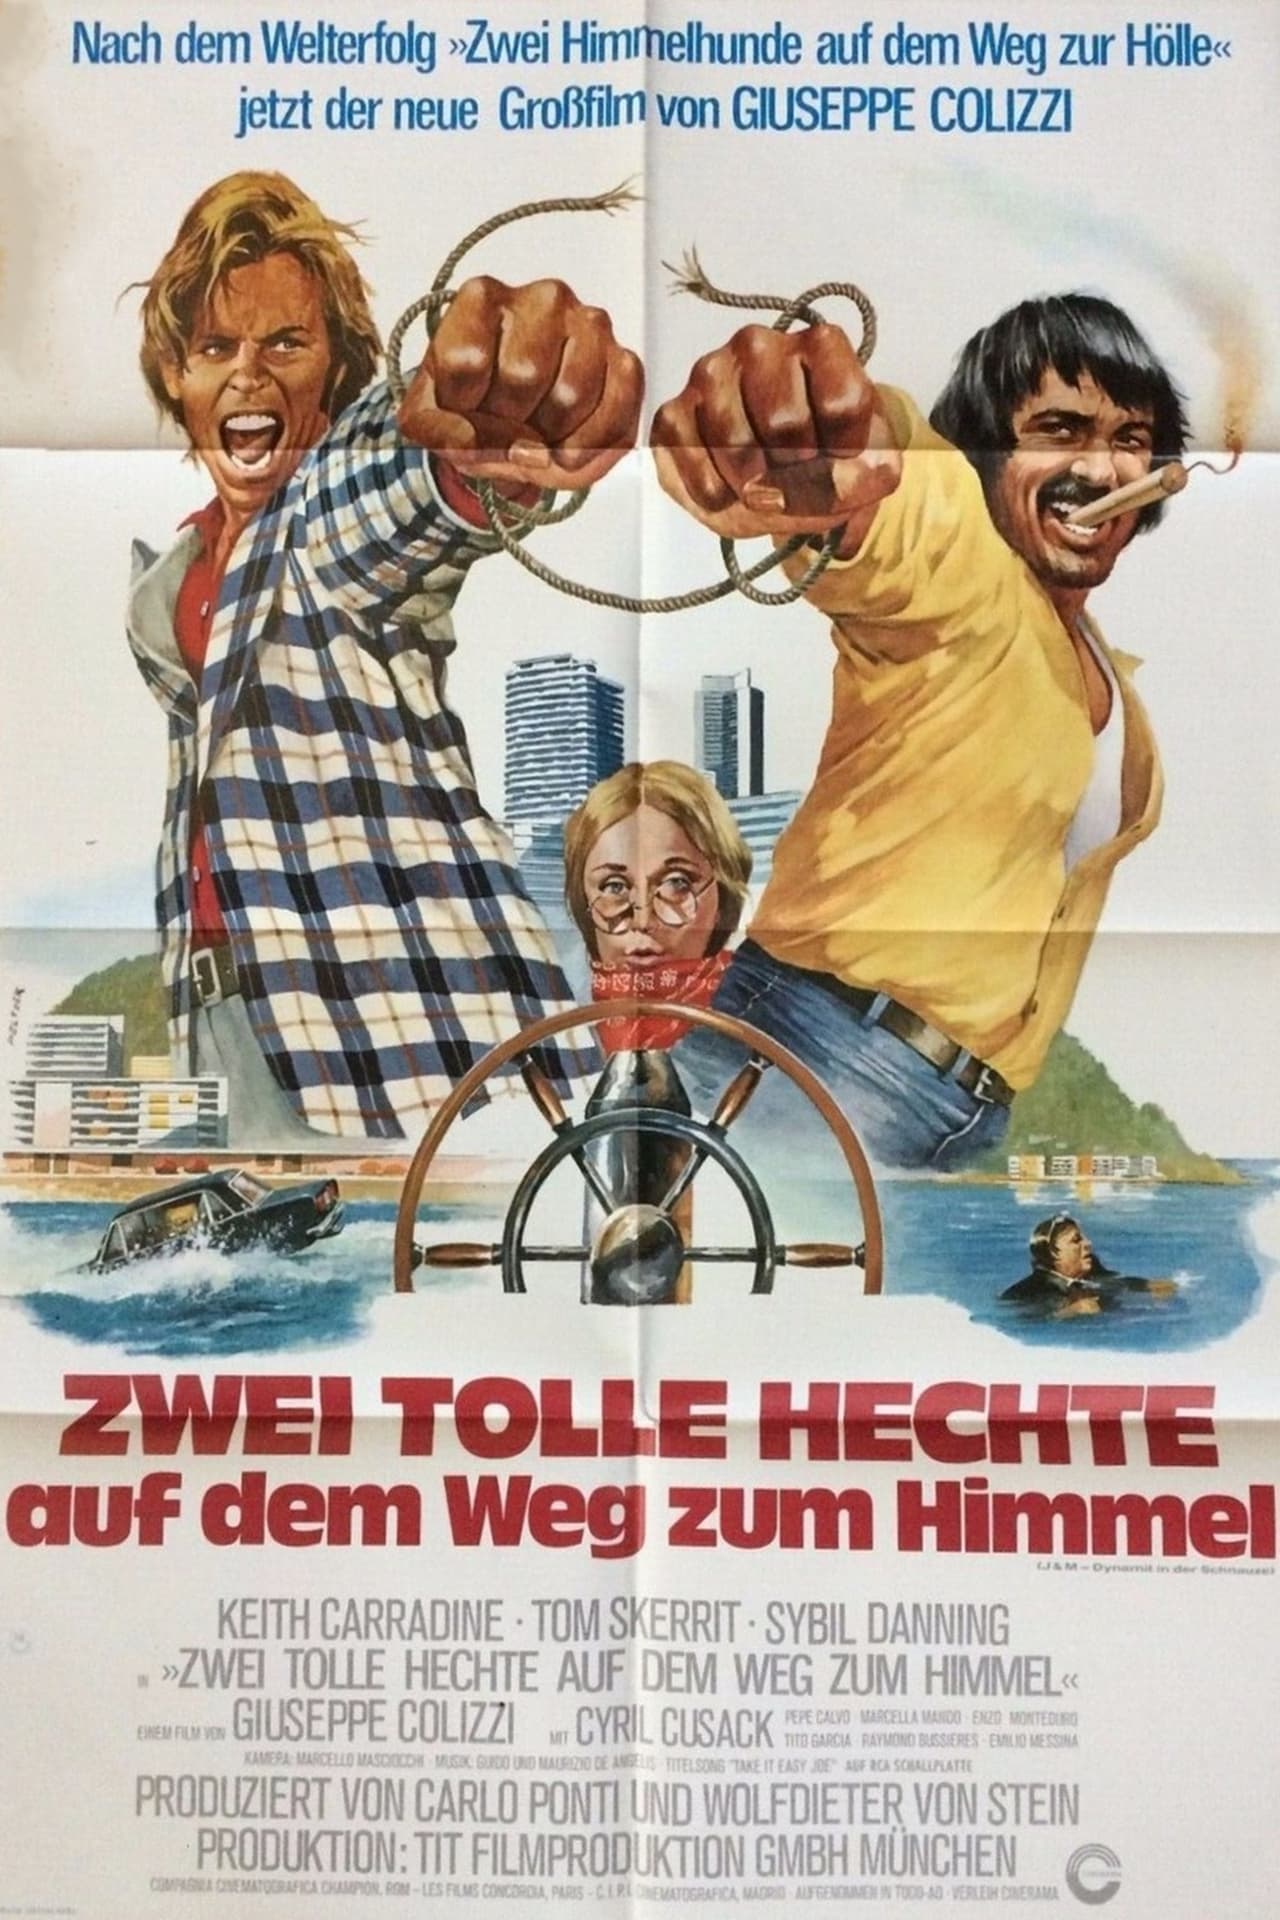 J & M - Dynamit in der Schnauze (1974)